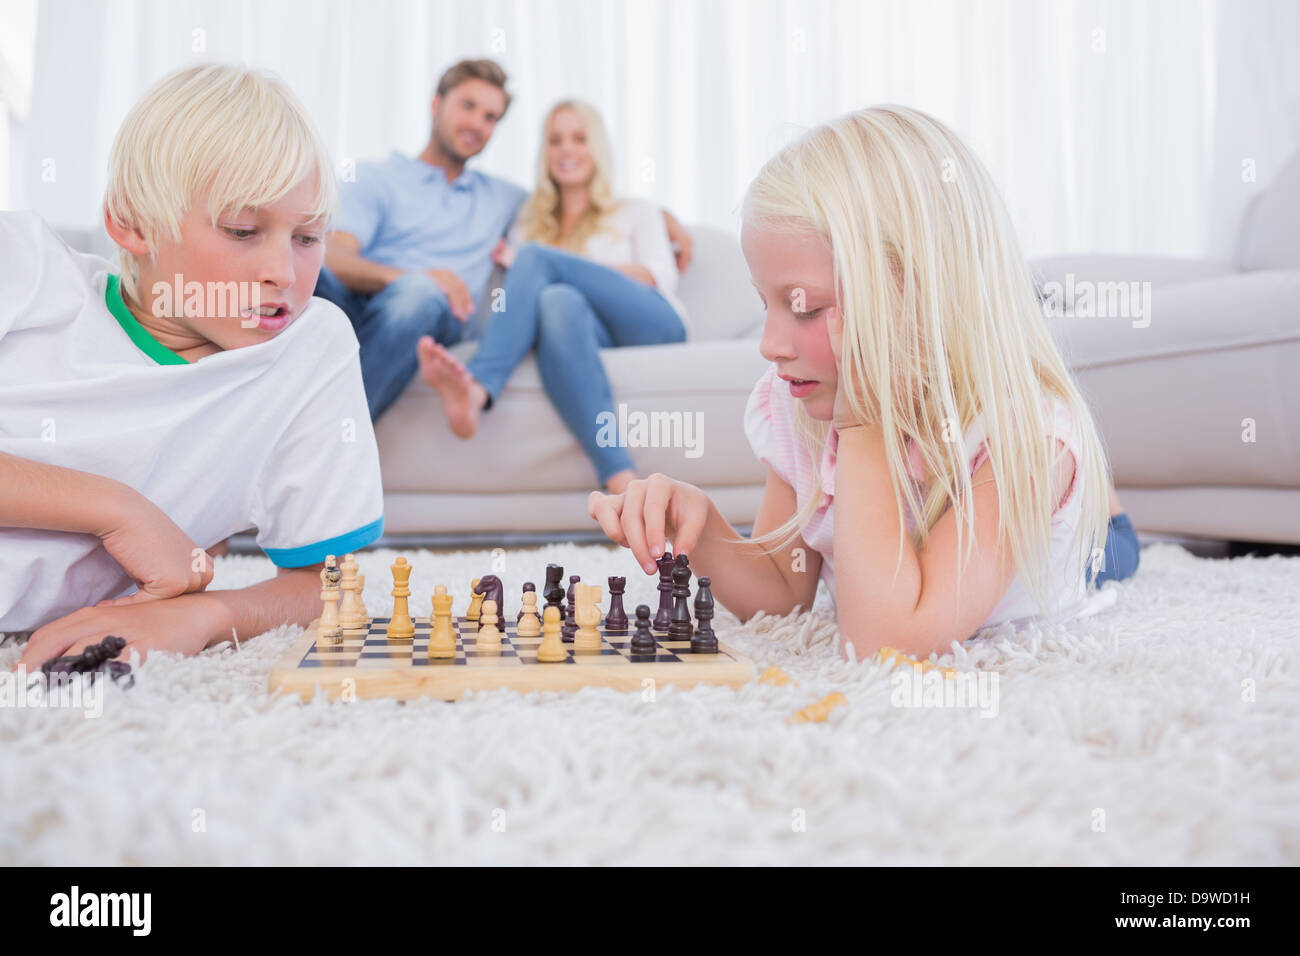 Les parents à leurs enfants à jouer aux échecs Banque D'Images